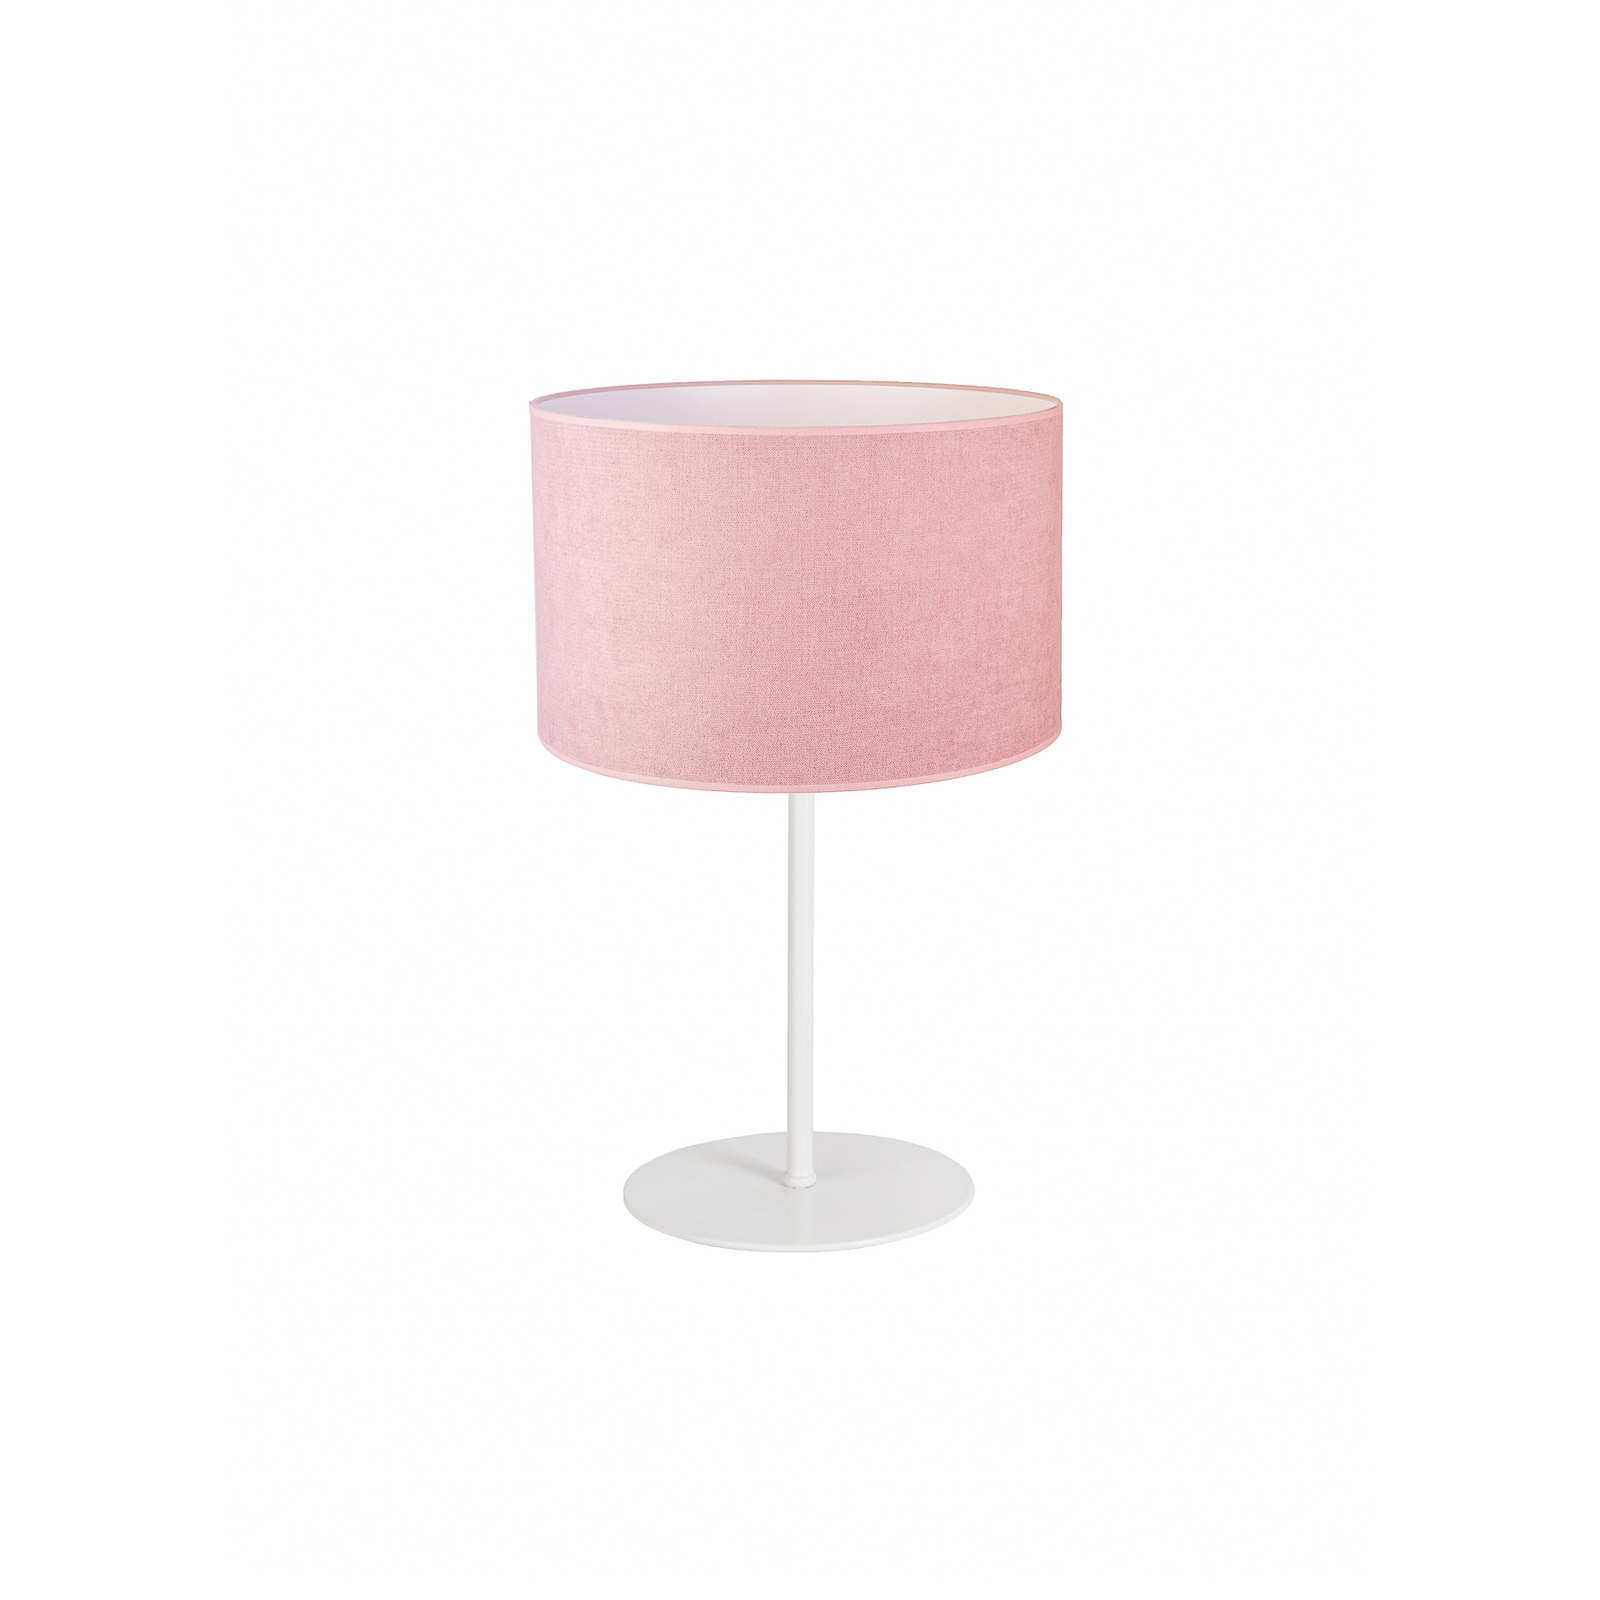 Pöytälamppu Pastell Roller, korkeus 30 cm, roosa